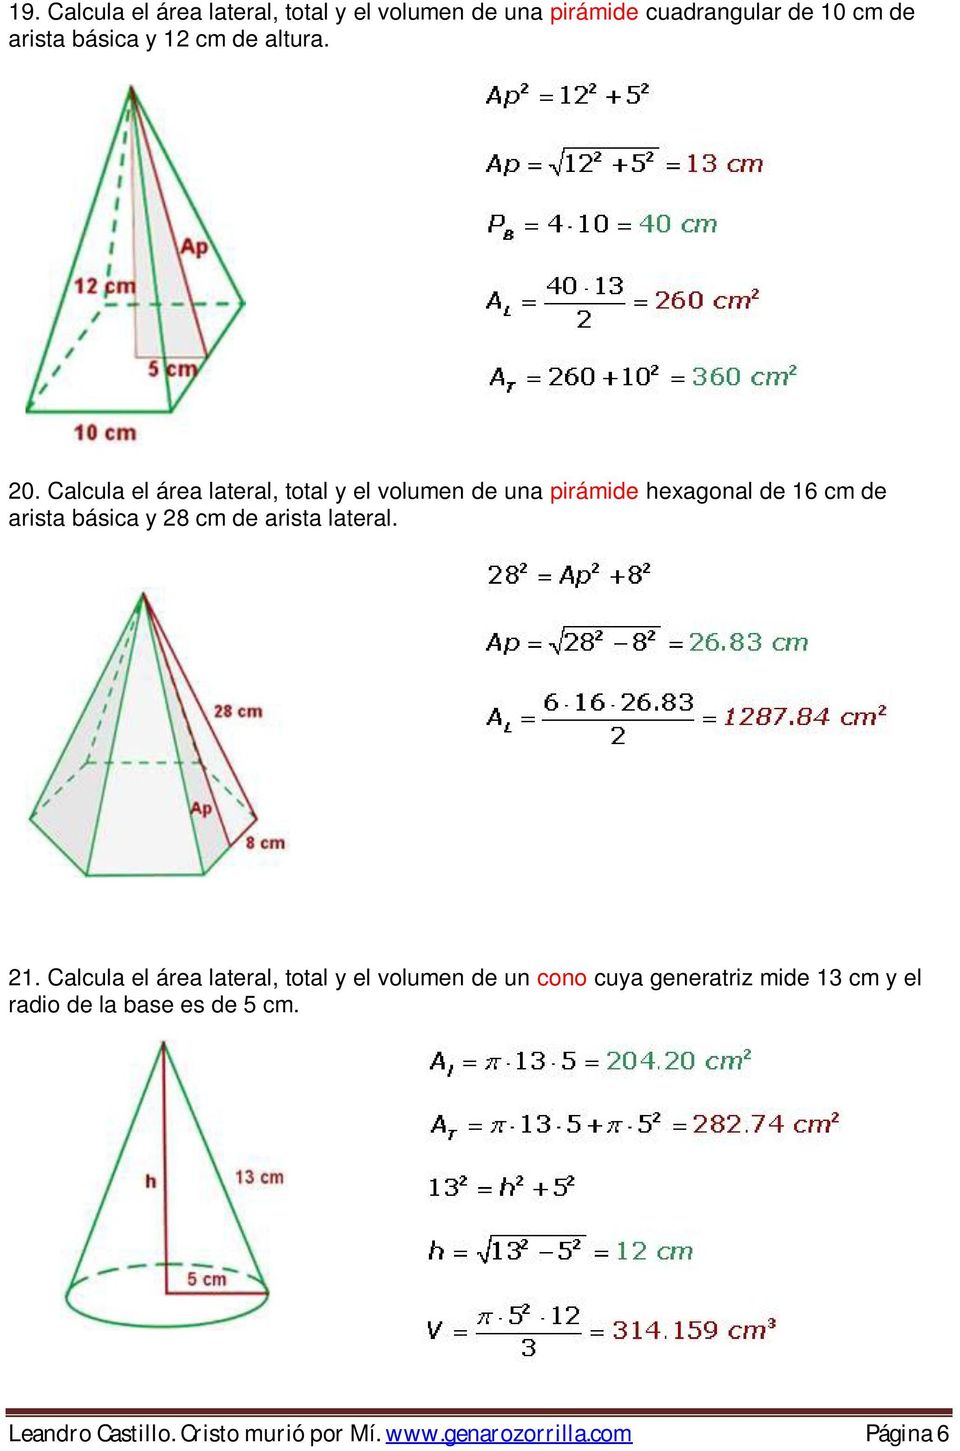 Calcula el área lateral, total y el volumen de una pirámide hexagonal de 16 cm de arista básica y 28 cm de